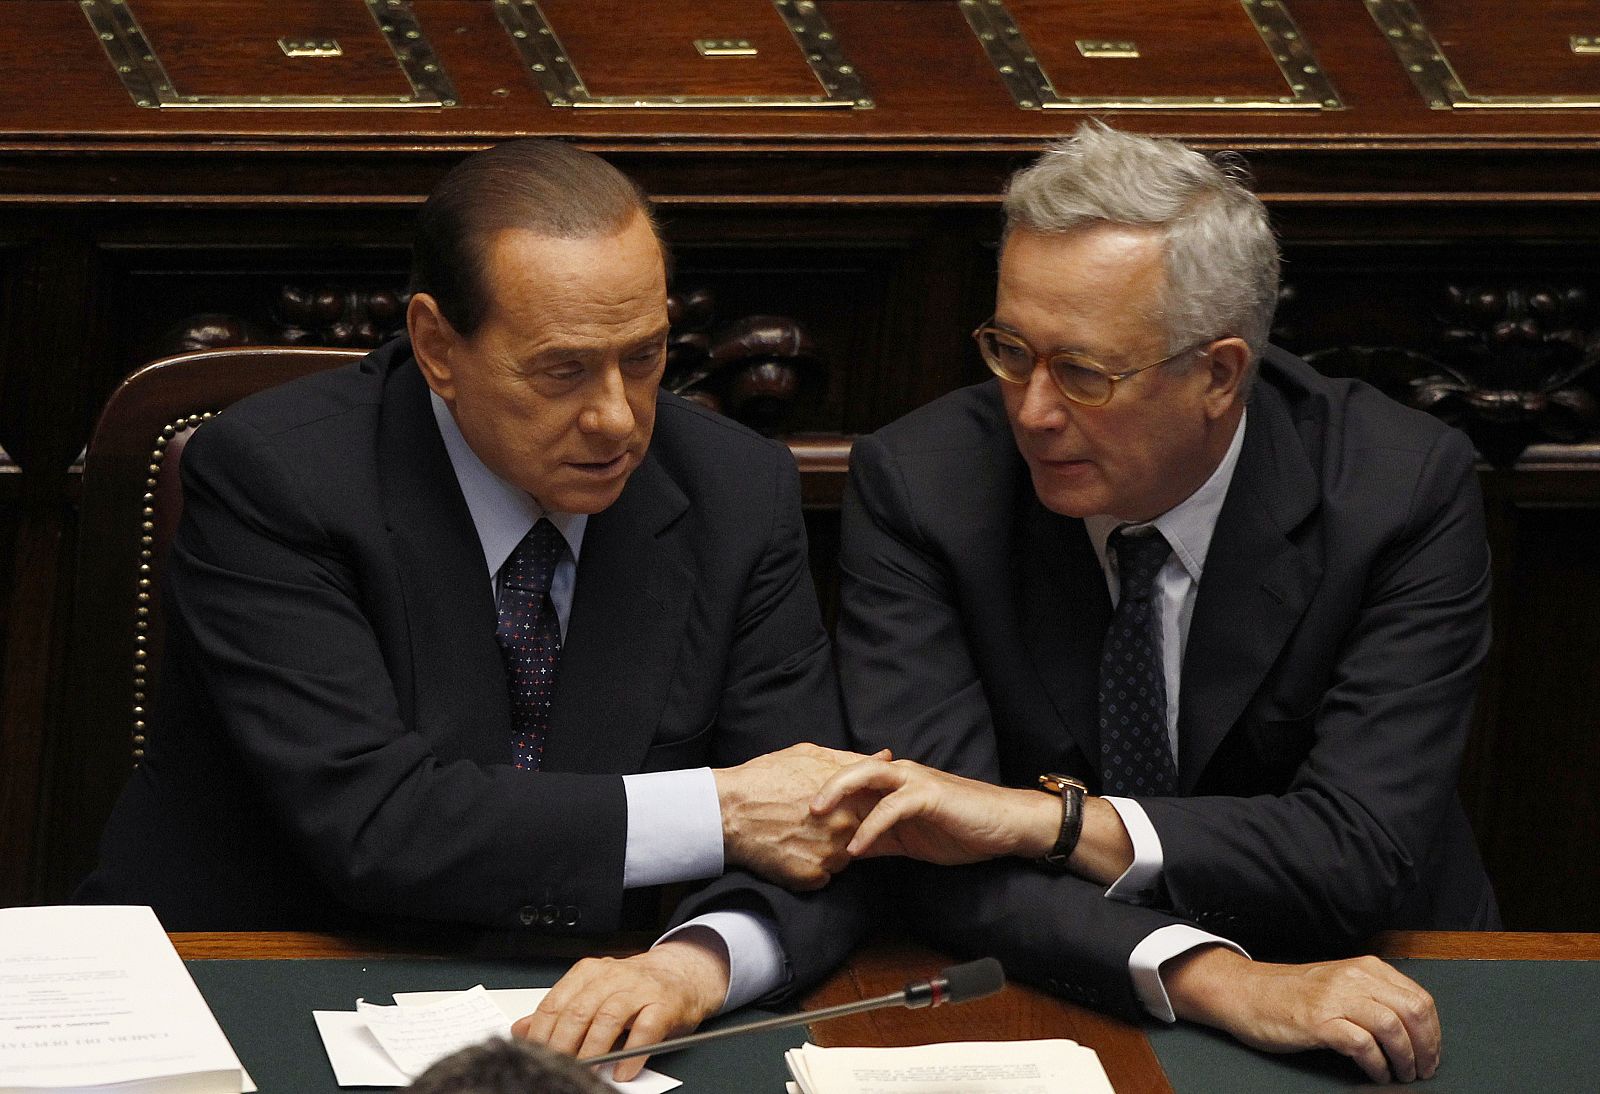 Silvio Berlusconi, primer ministro de Italia, conversa con el ministro de Economía, Giulio Tremonti